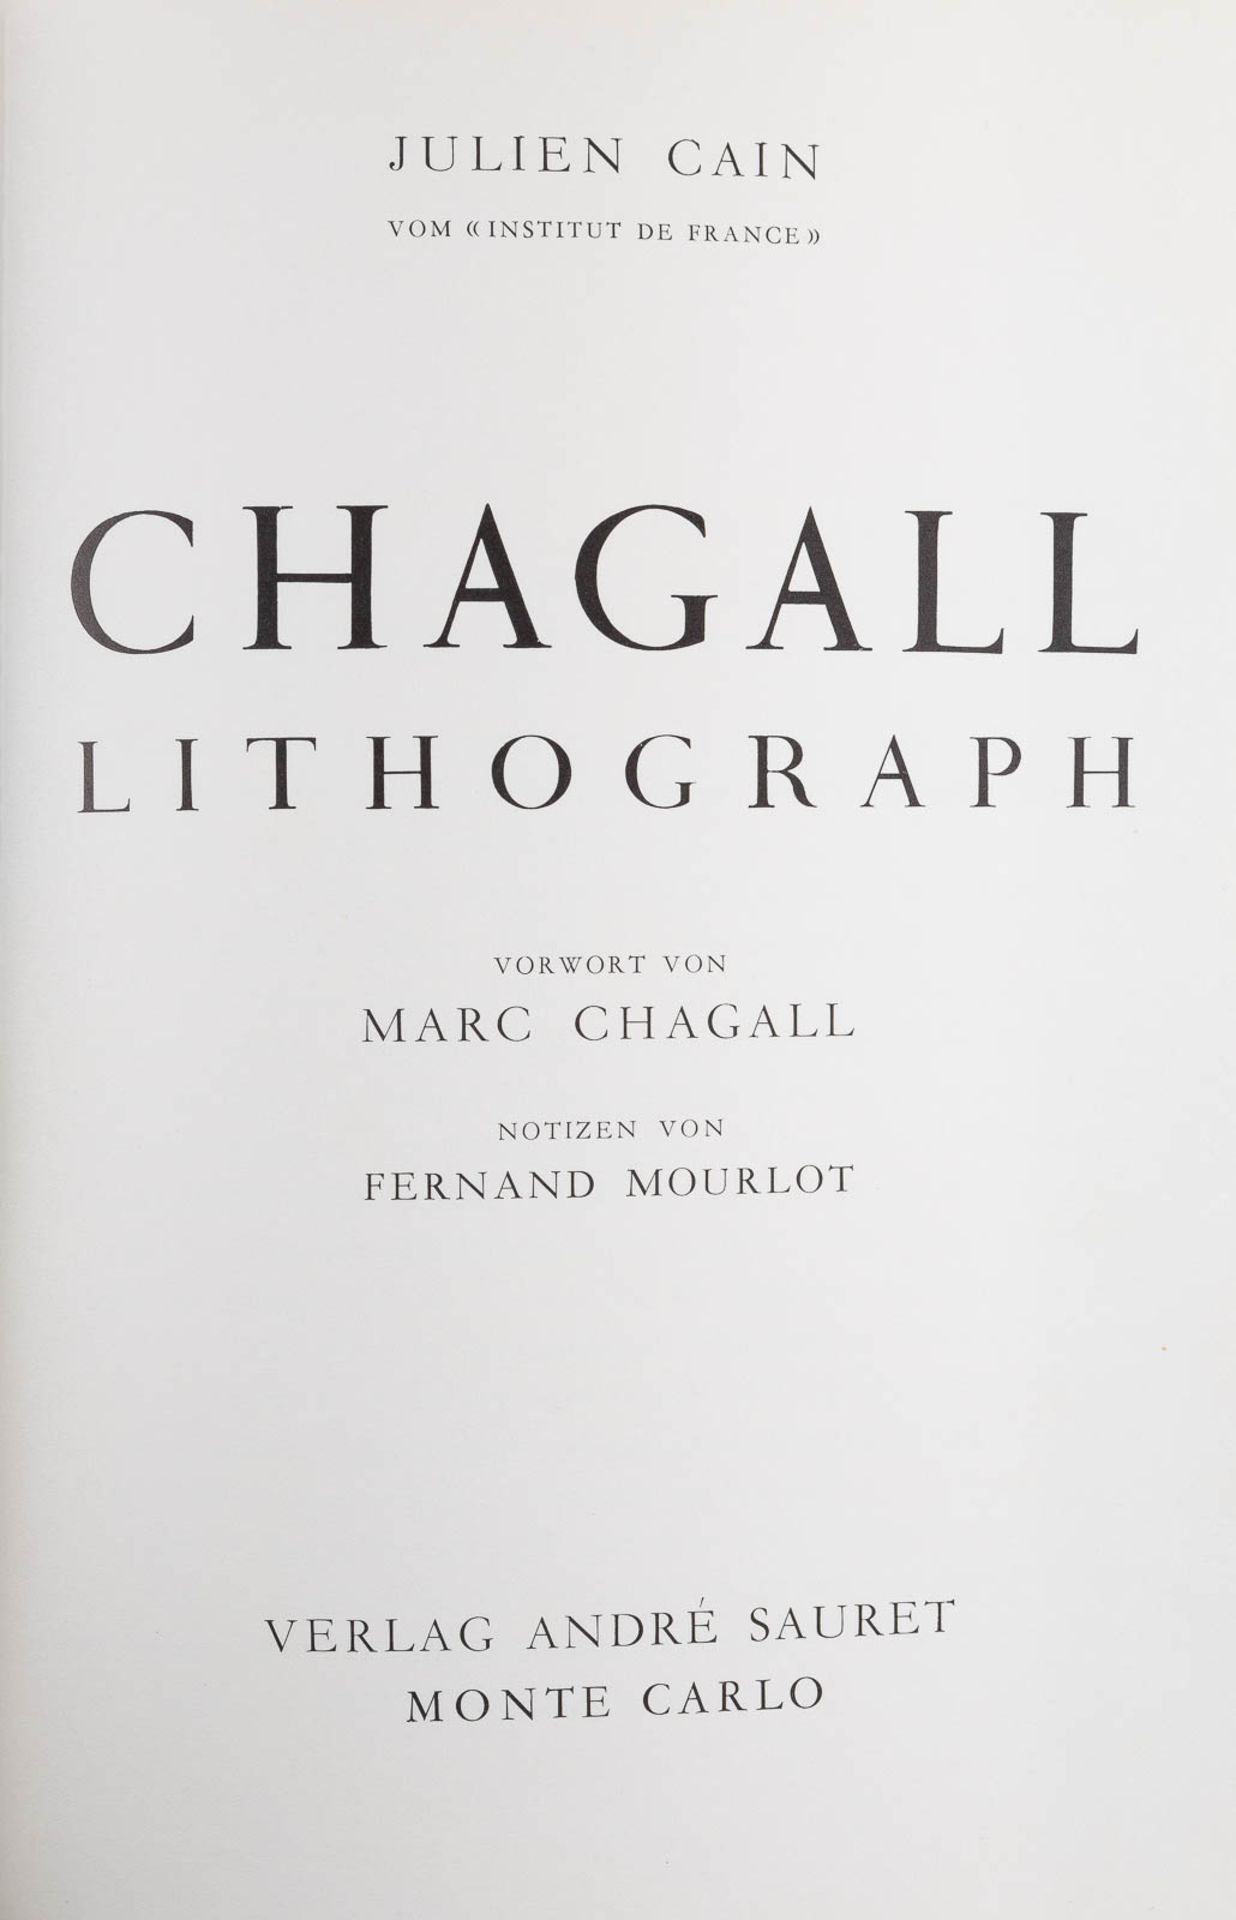 MARC CHAGALL 1887 Witebsk - 1985 Paul de Vence 'CHAGALL LITHOGRAPH' (SECHS BÄNDE DES - Bild 3 aus 19